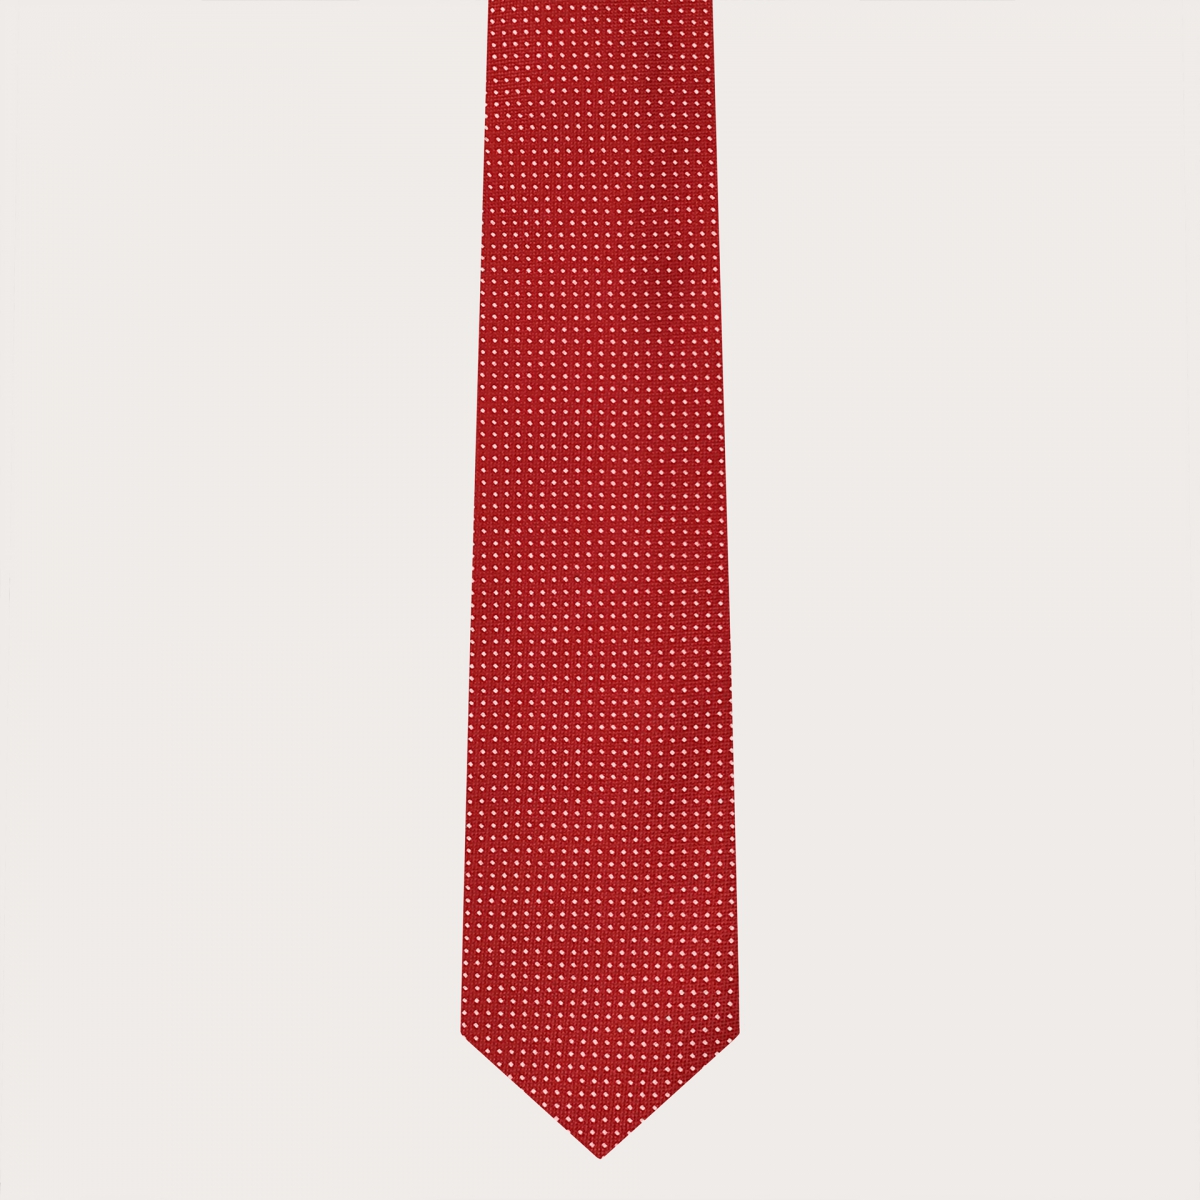 Brucle cravate rouge à pois en soie jacquard